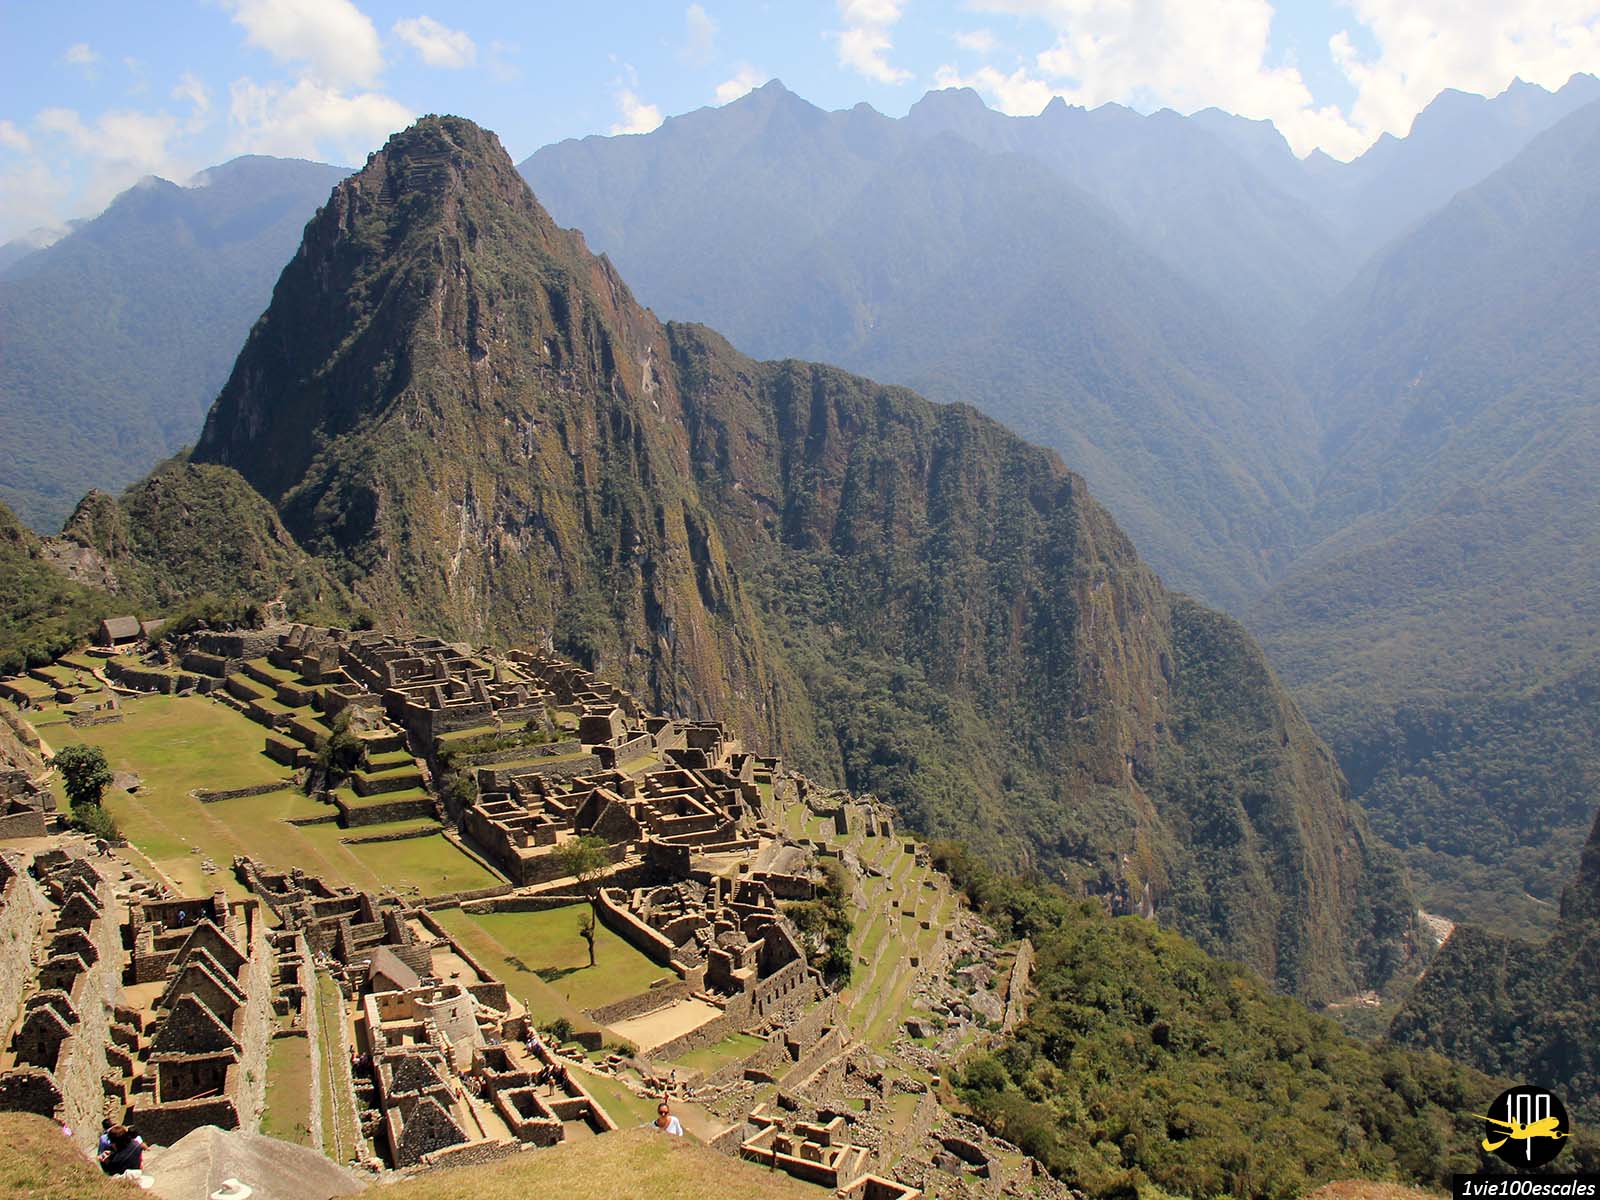 Une des raisons principales d'aller au Pérou, c'est évidemment pour visiter Machu Picchu, une des sept merveilles du monde